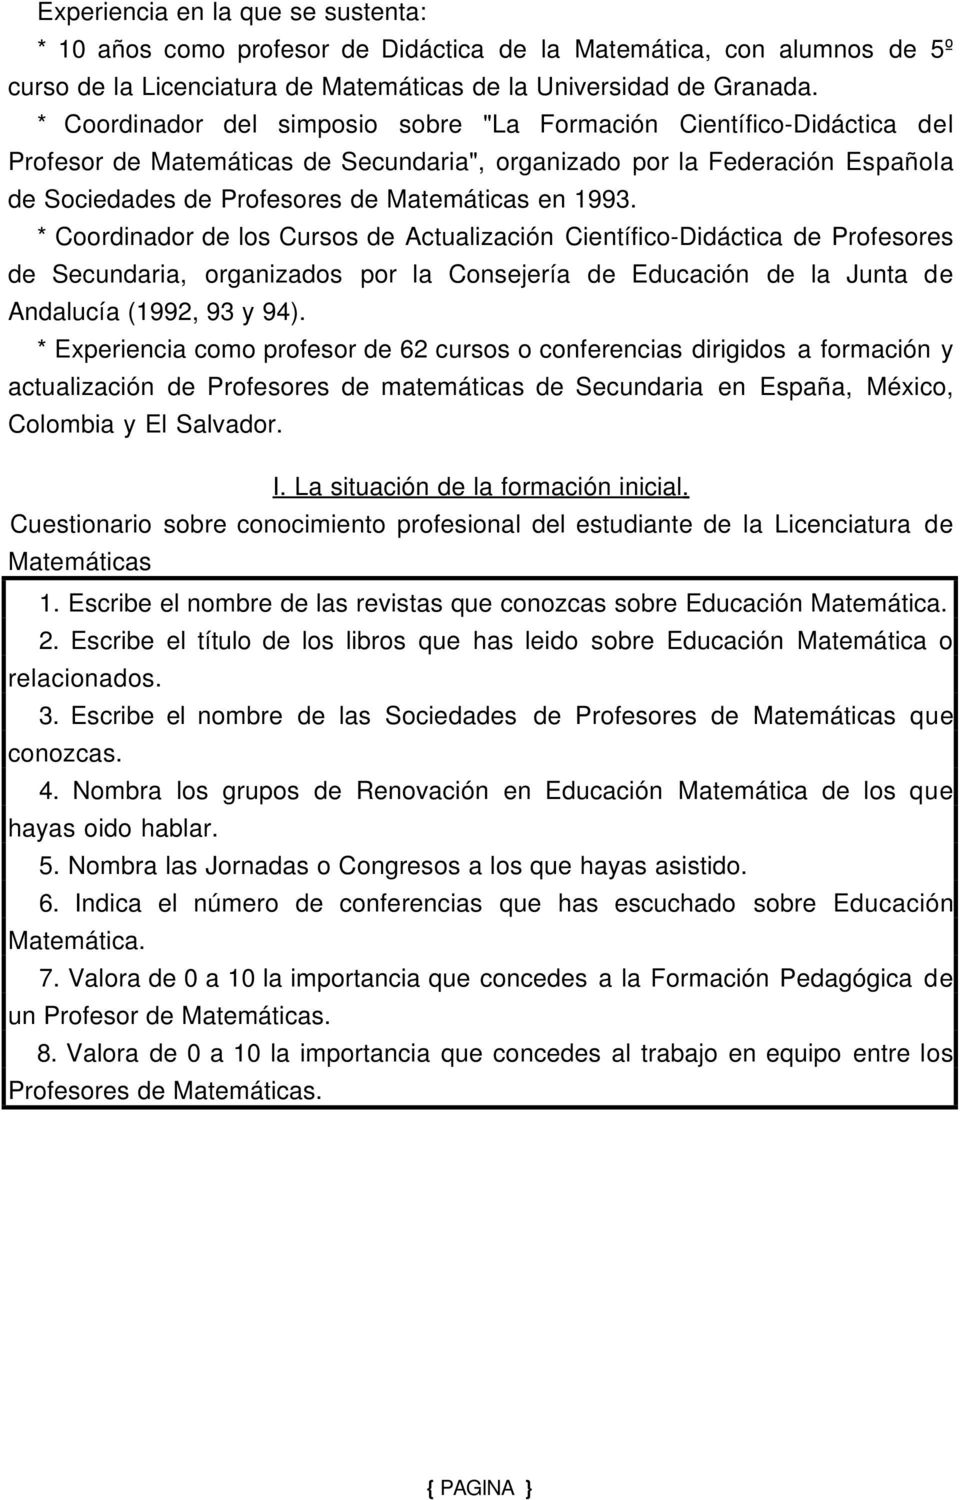 1993. * Coordinador de los Cursos de Actualización Científico-Didáctica de Profesores de Secundaria, organizados por la Consejería de Educación de la Junta de Andalucía (1992, 93 y 94).